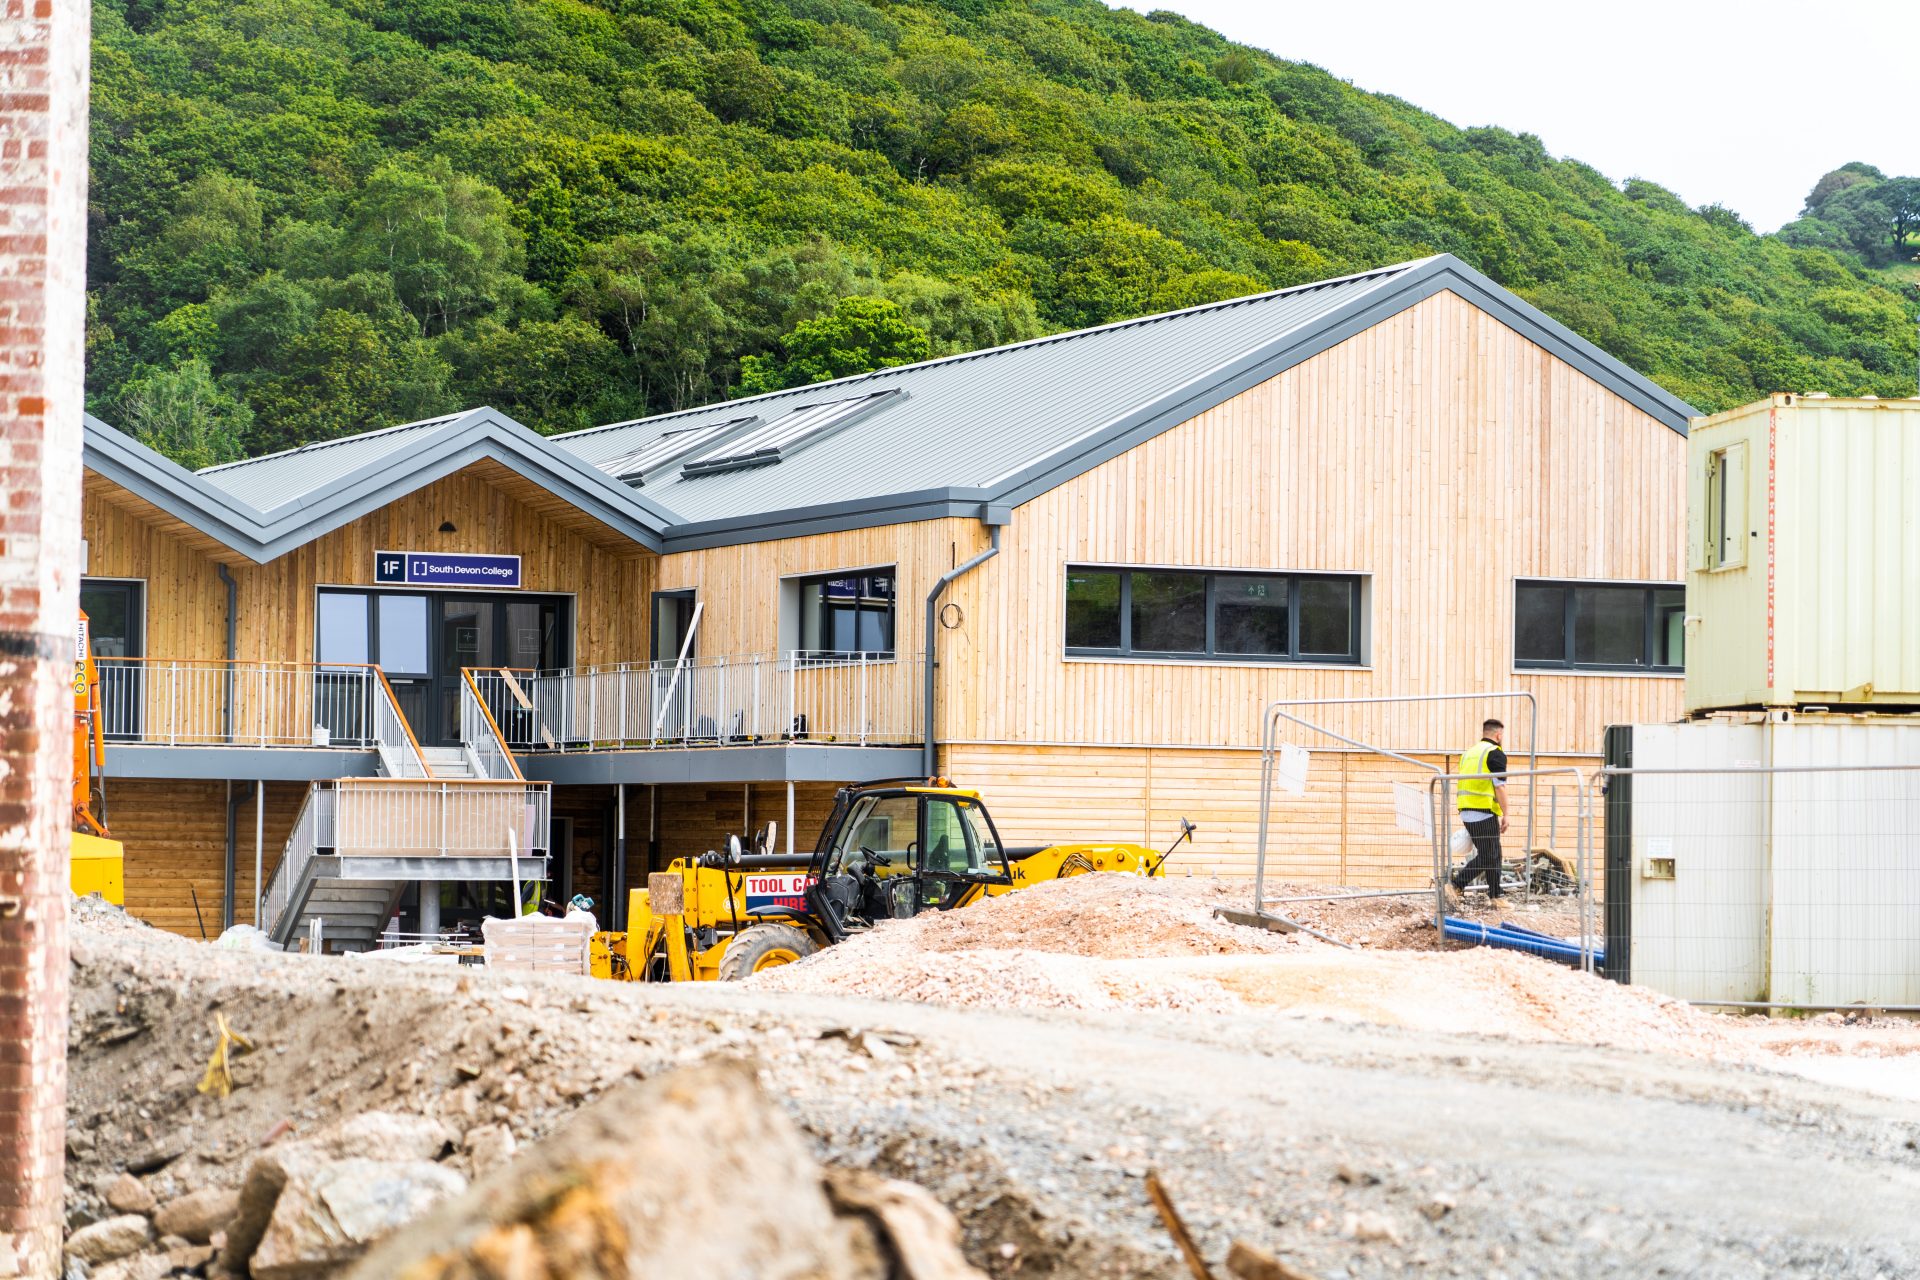 South Devon Marine Academy being built